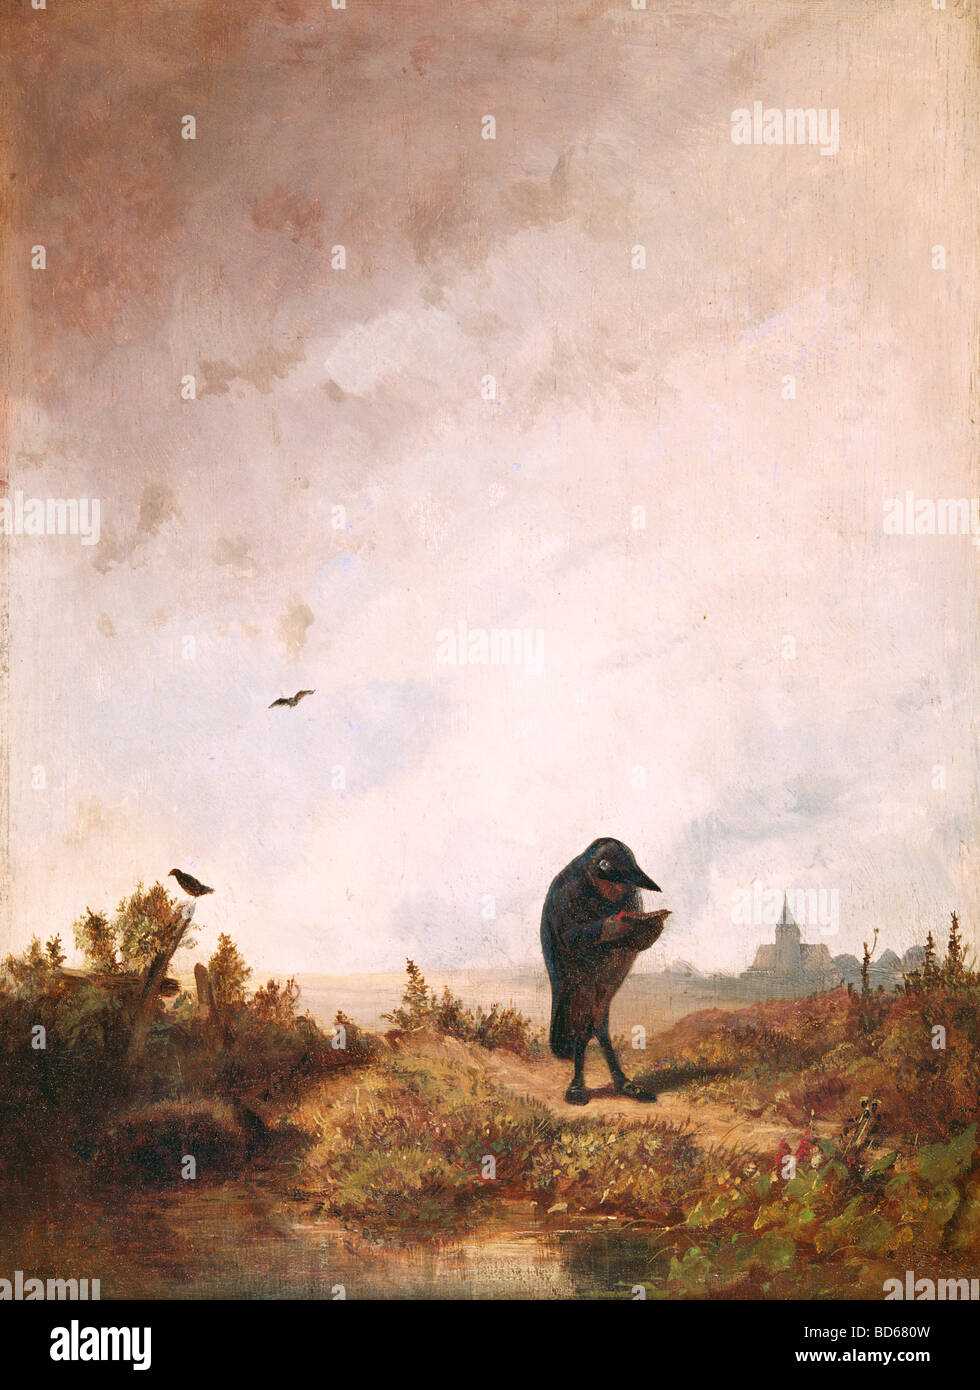 Bildende Kunst, Spitzweg, Carl (1808 – 1885), Malerei, Öl auf Holz, 27 x 36 cm, ca. 1840, Haus der Kunst München, Karl, Deutsch, Stockfoto